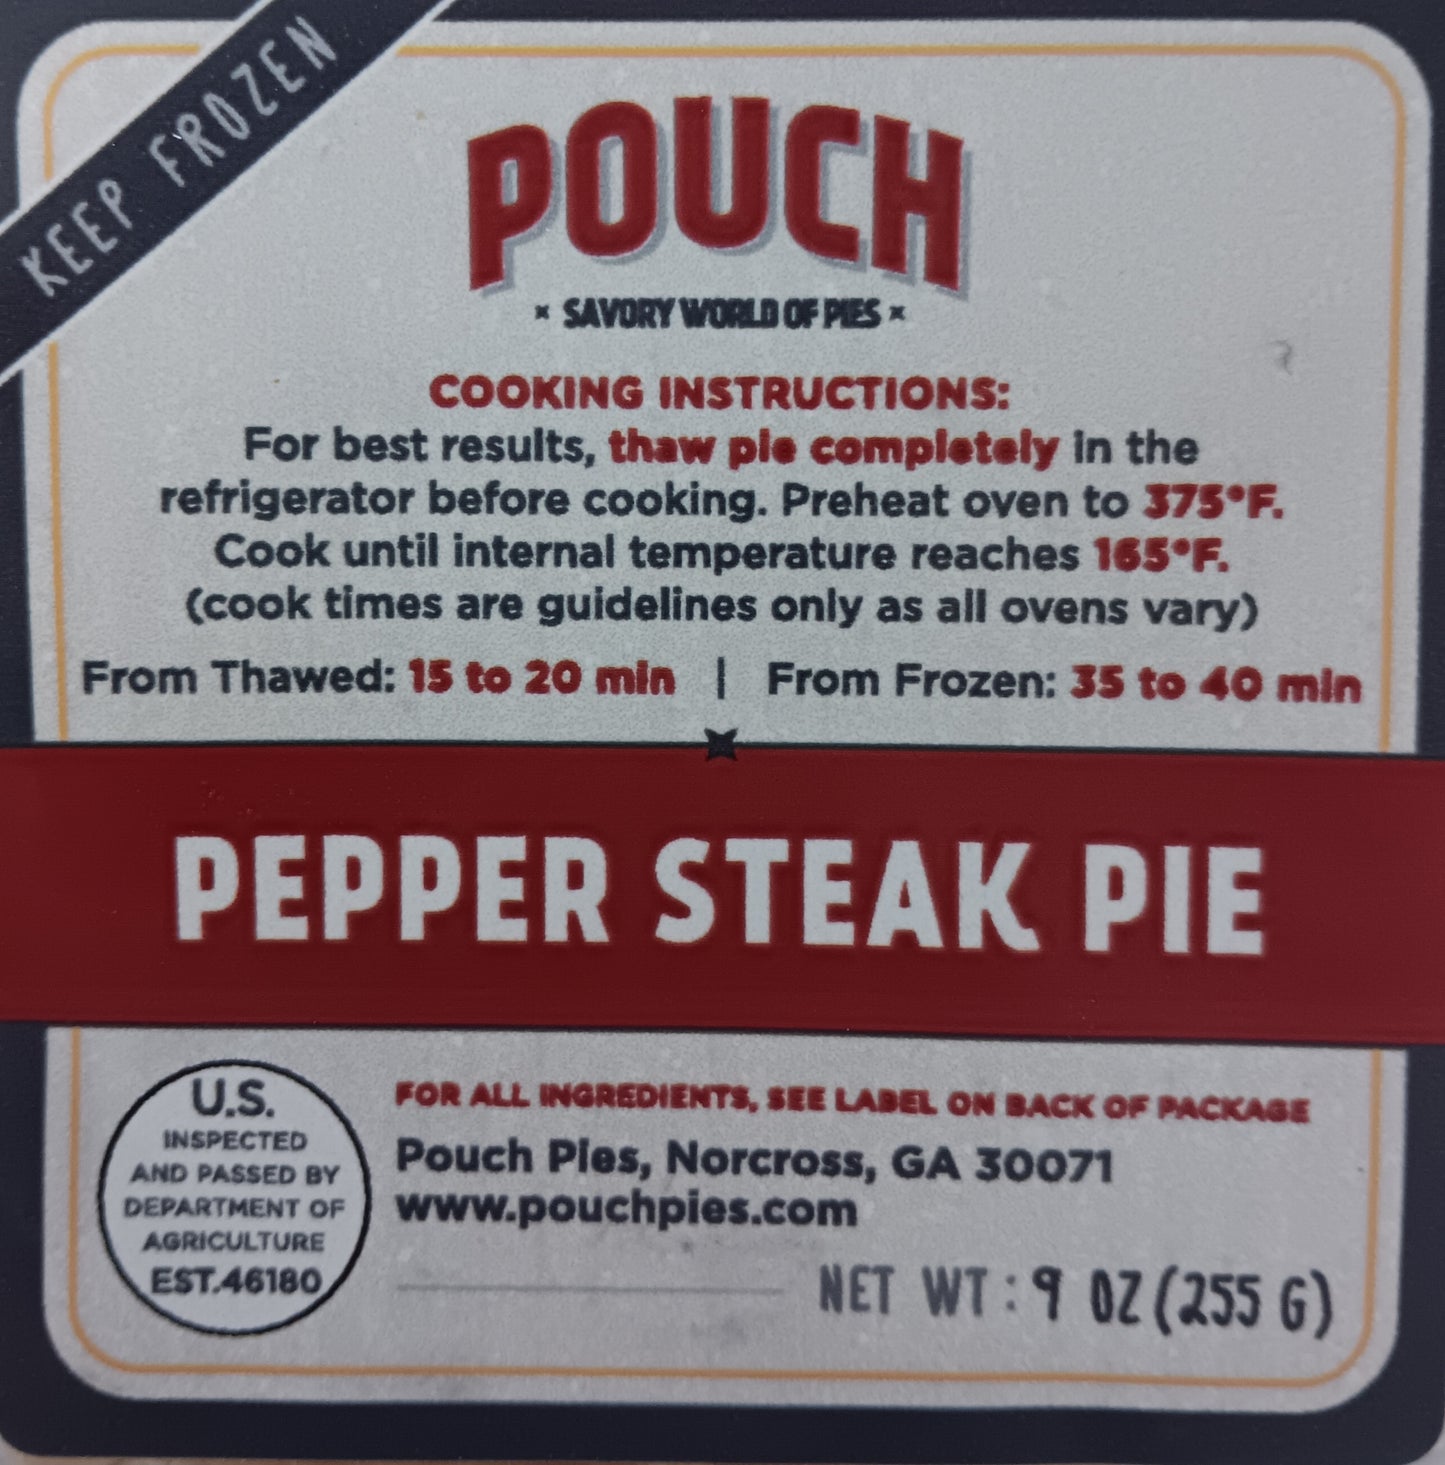 Pouch Pies: Pepper Steak Pie 255g (9oz)